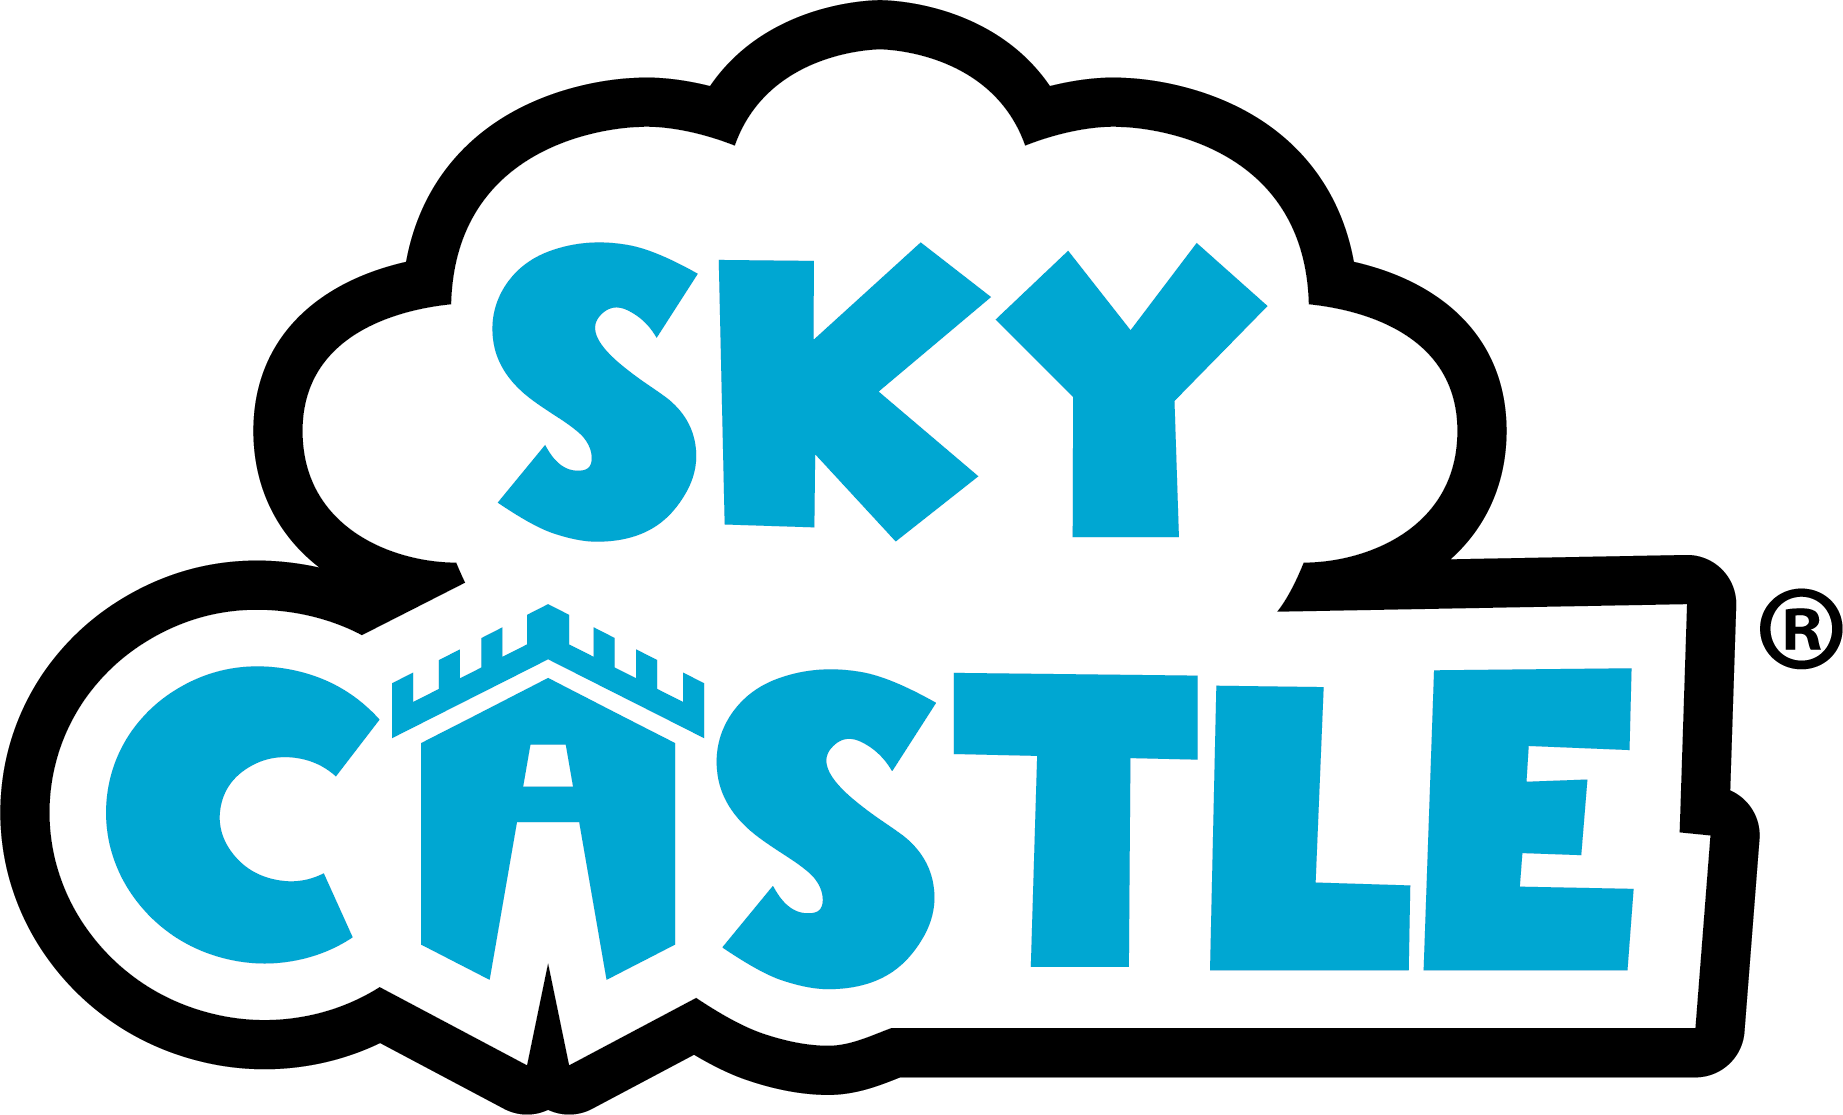 Skycastletoys-logo